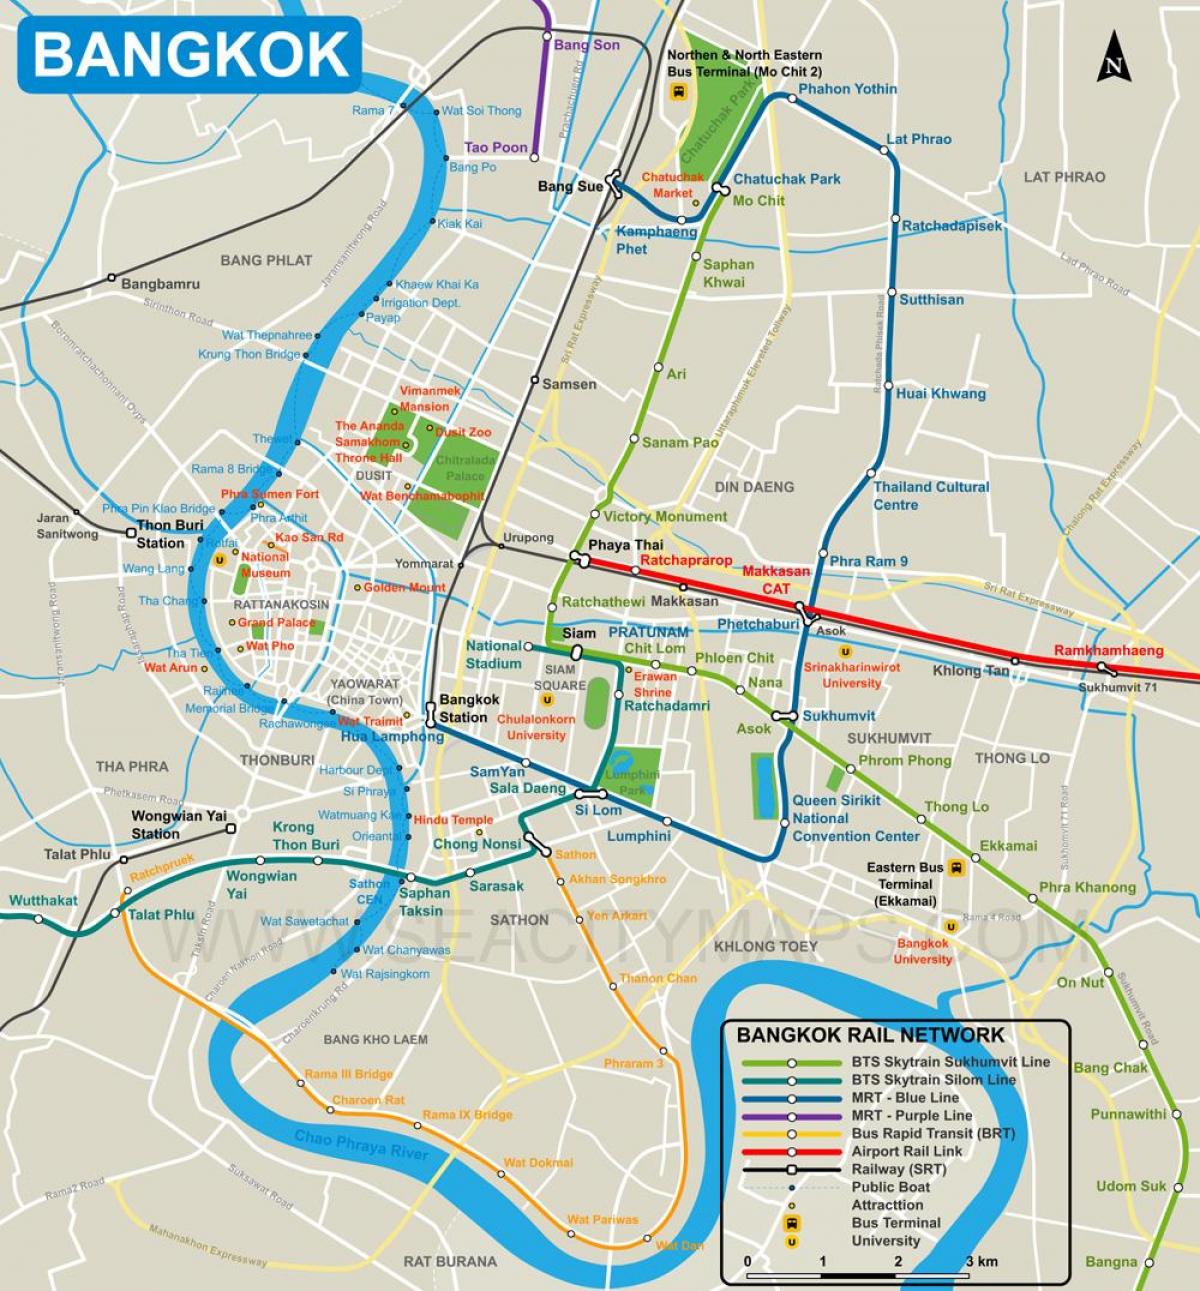 नक्शा बैंकाक शहर के केंद्र